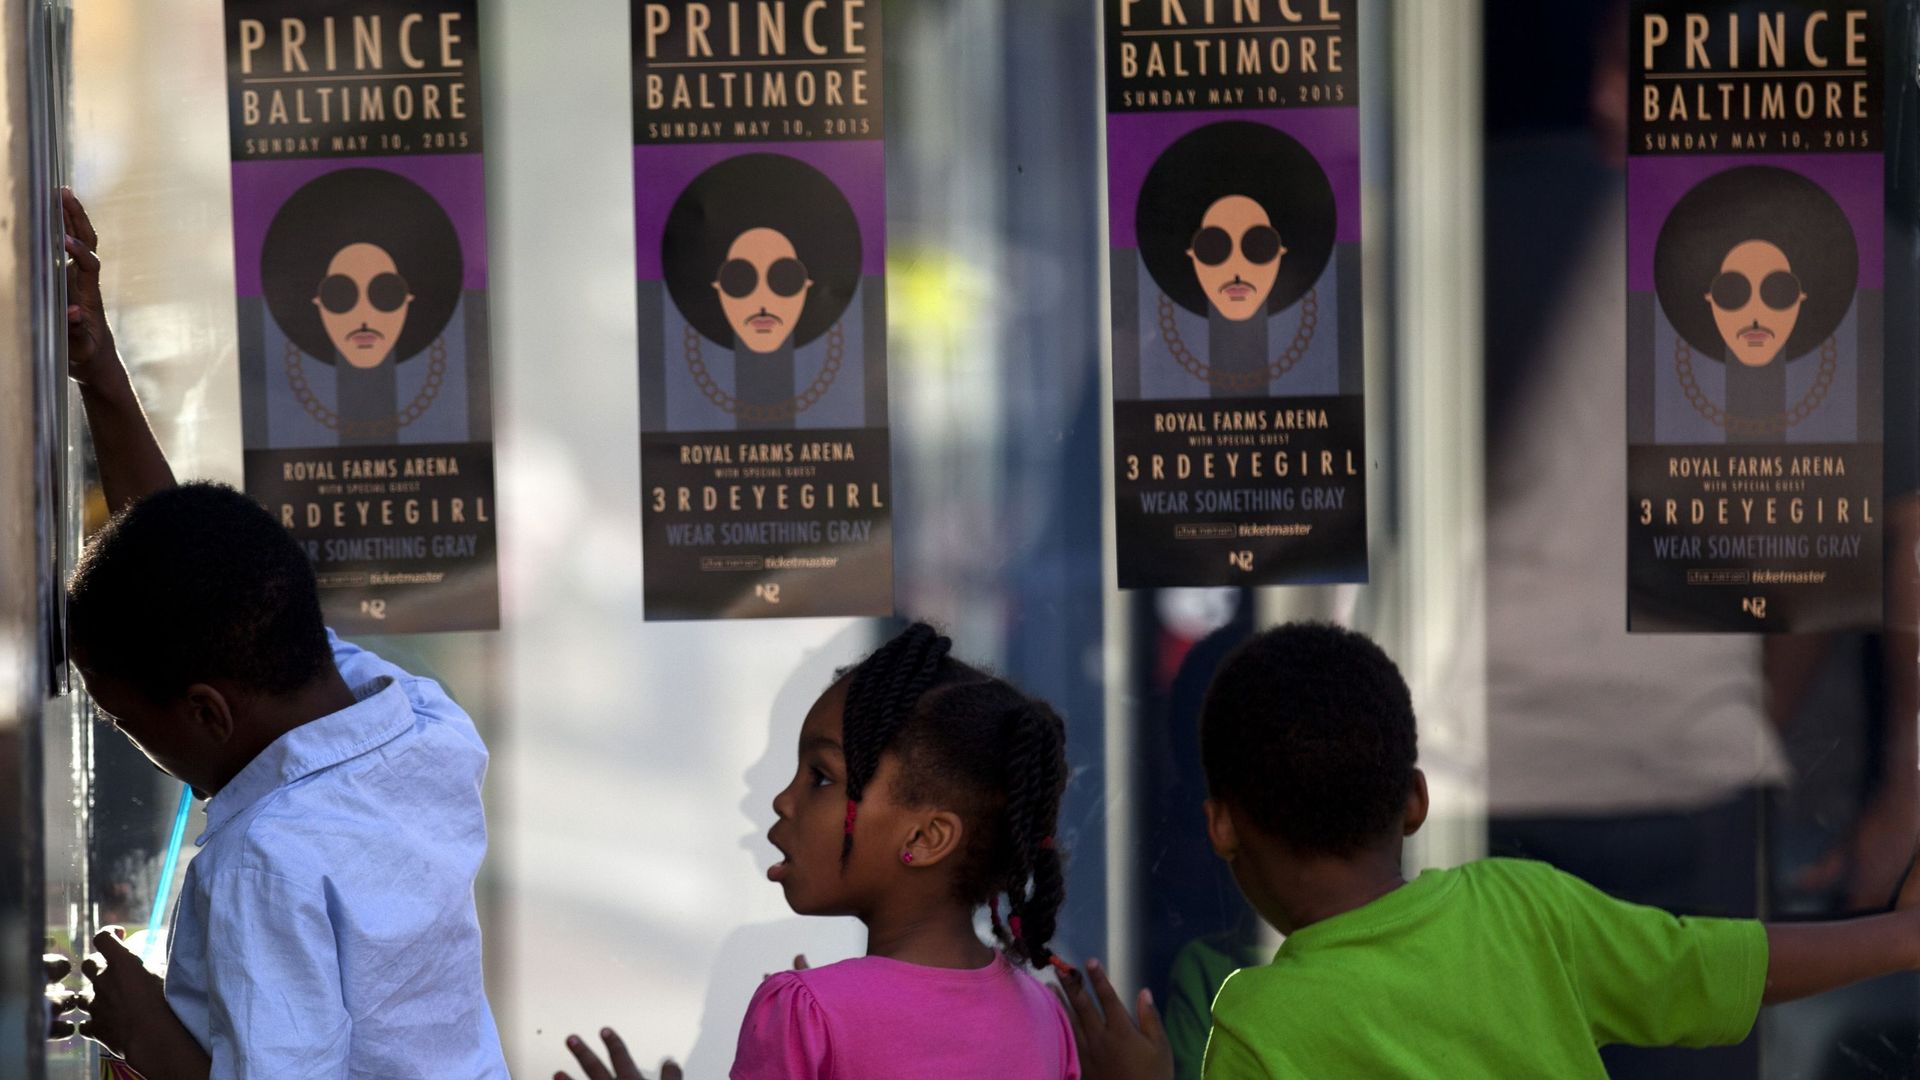 Prince a donné un concert pour la paix, le 10 mai à Baltimore